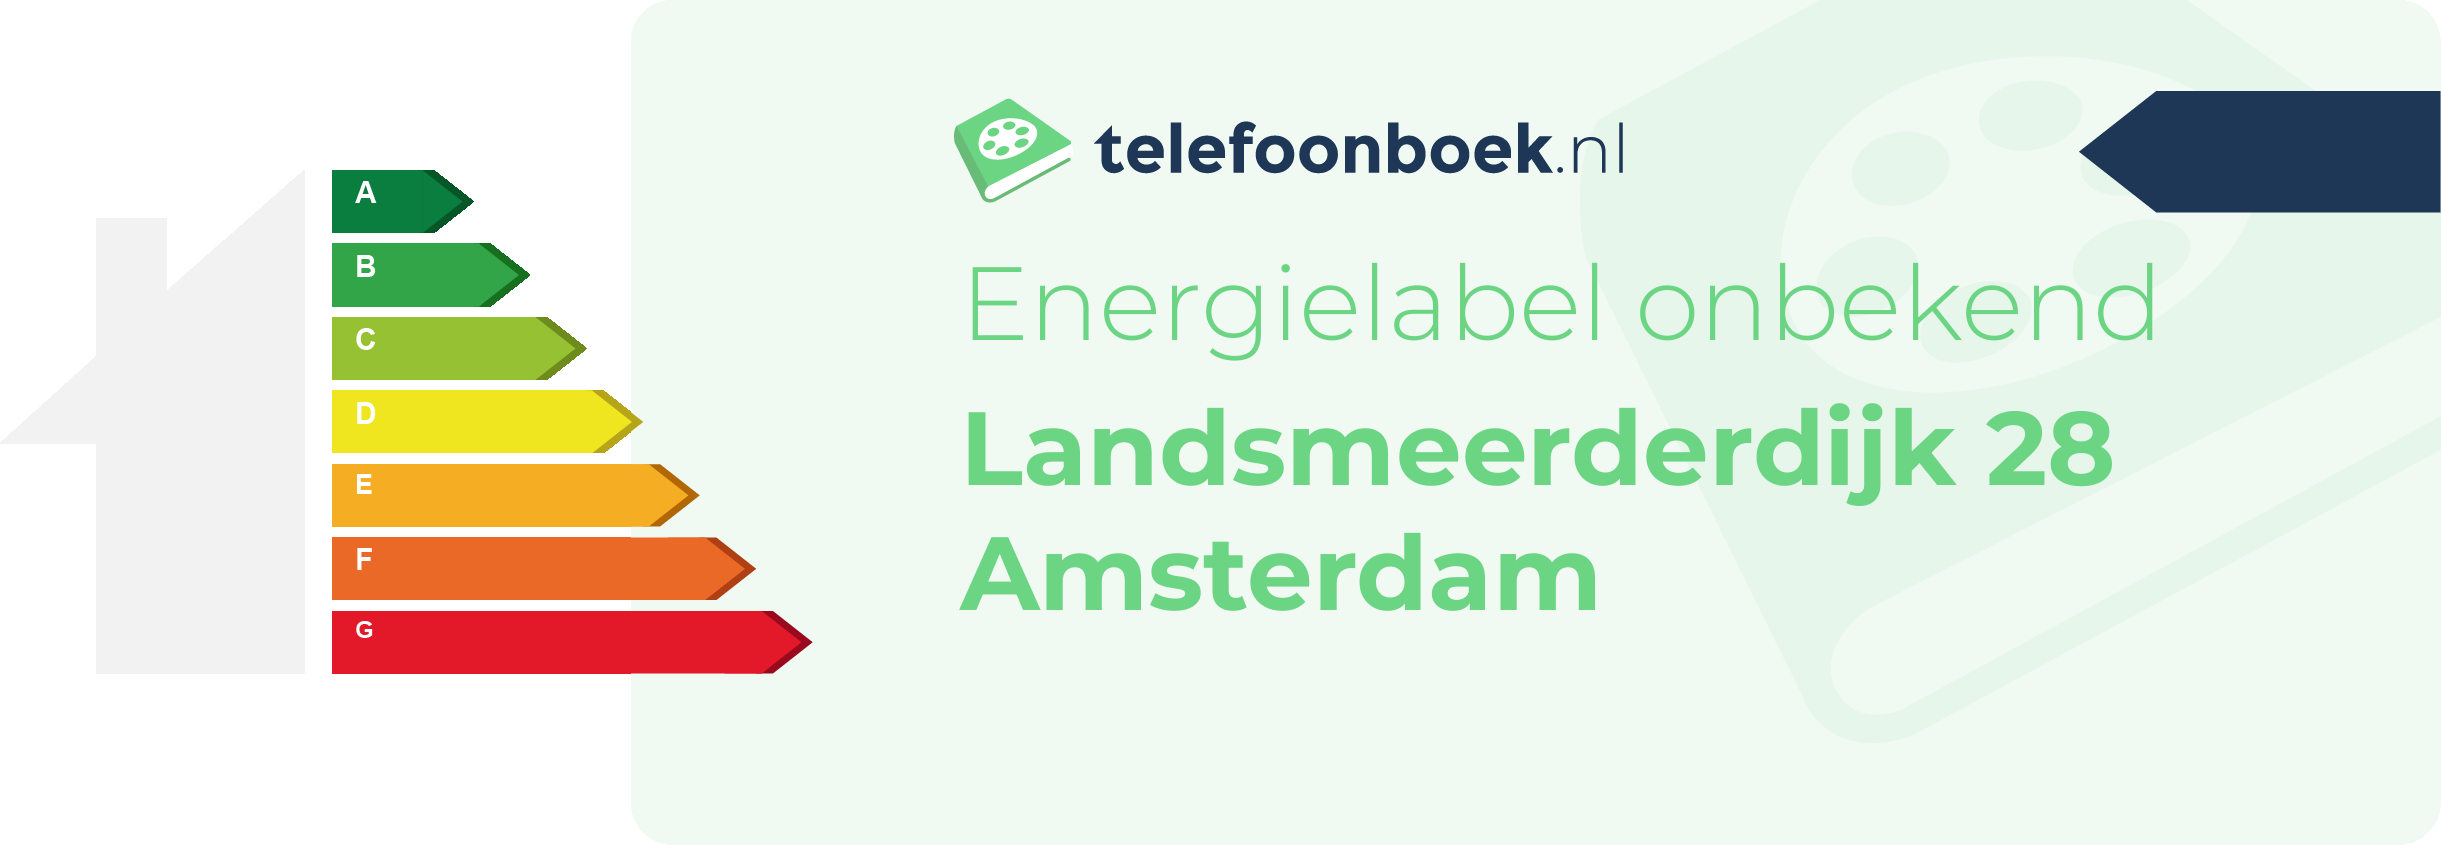 Energielabel Landsmeerderdijk 28 Amsterdam